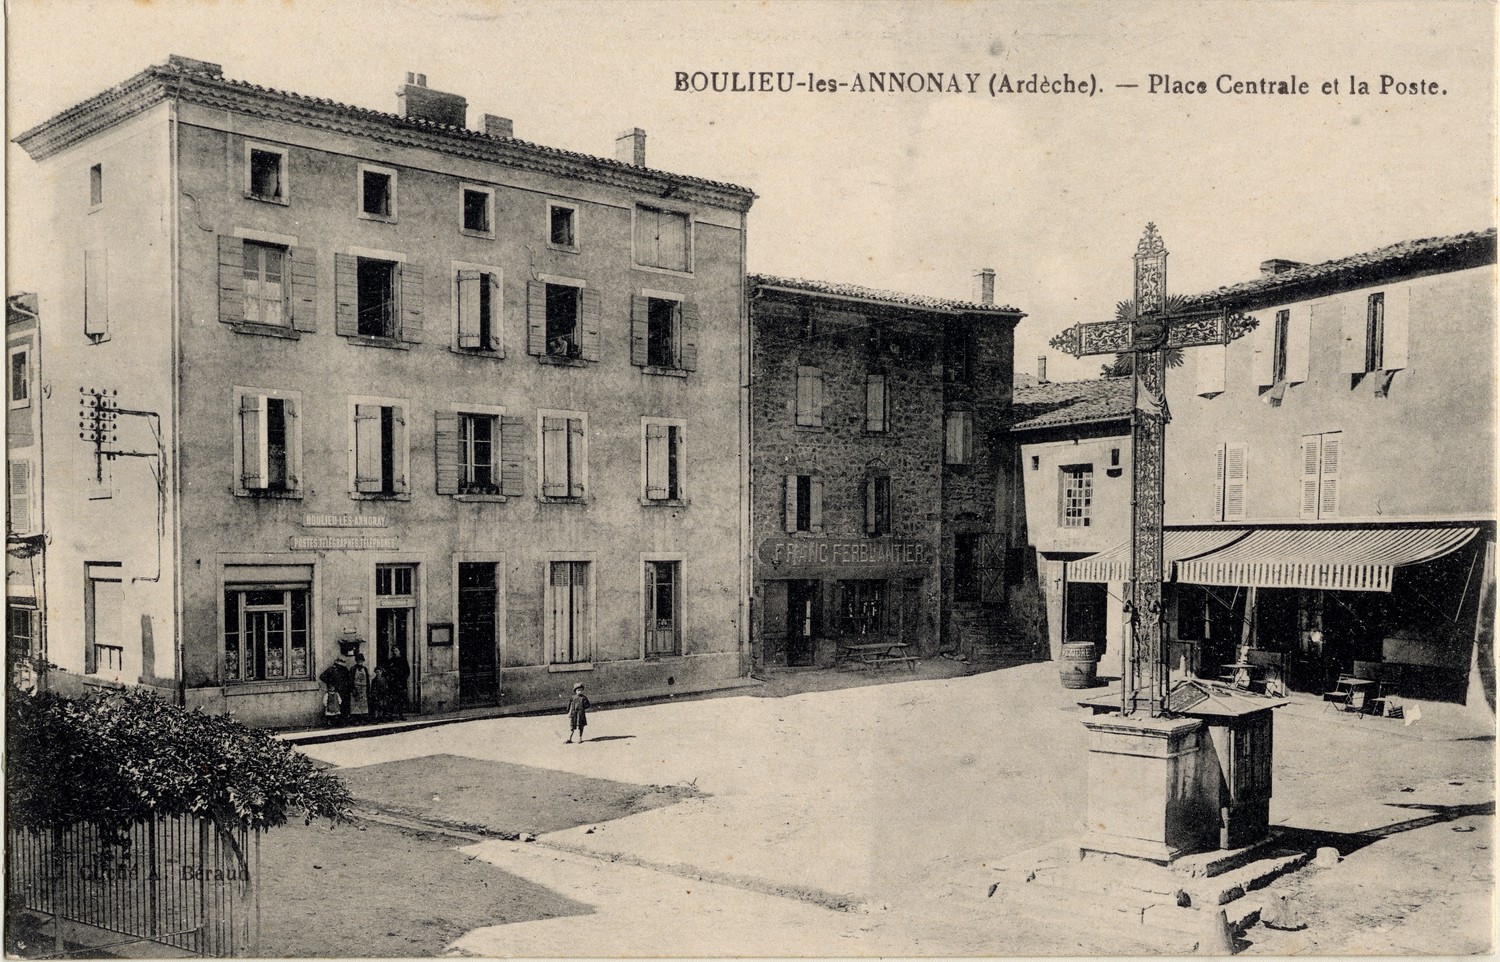 Boulieu-les-Annonay (Ardèche) : Place Centrale et la Poste